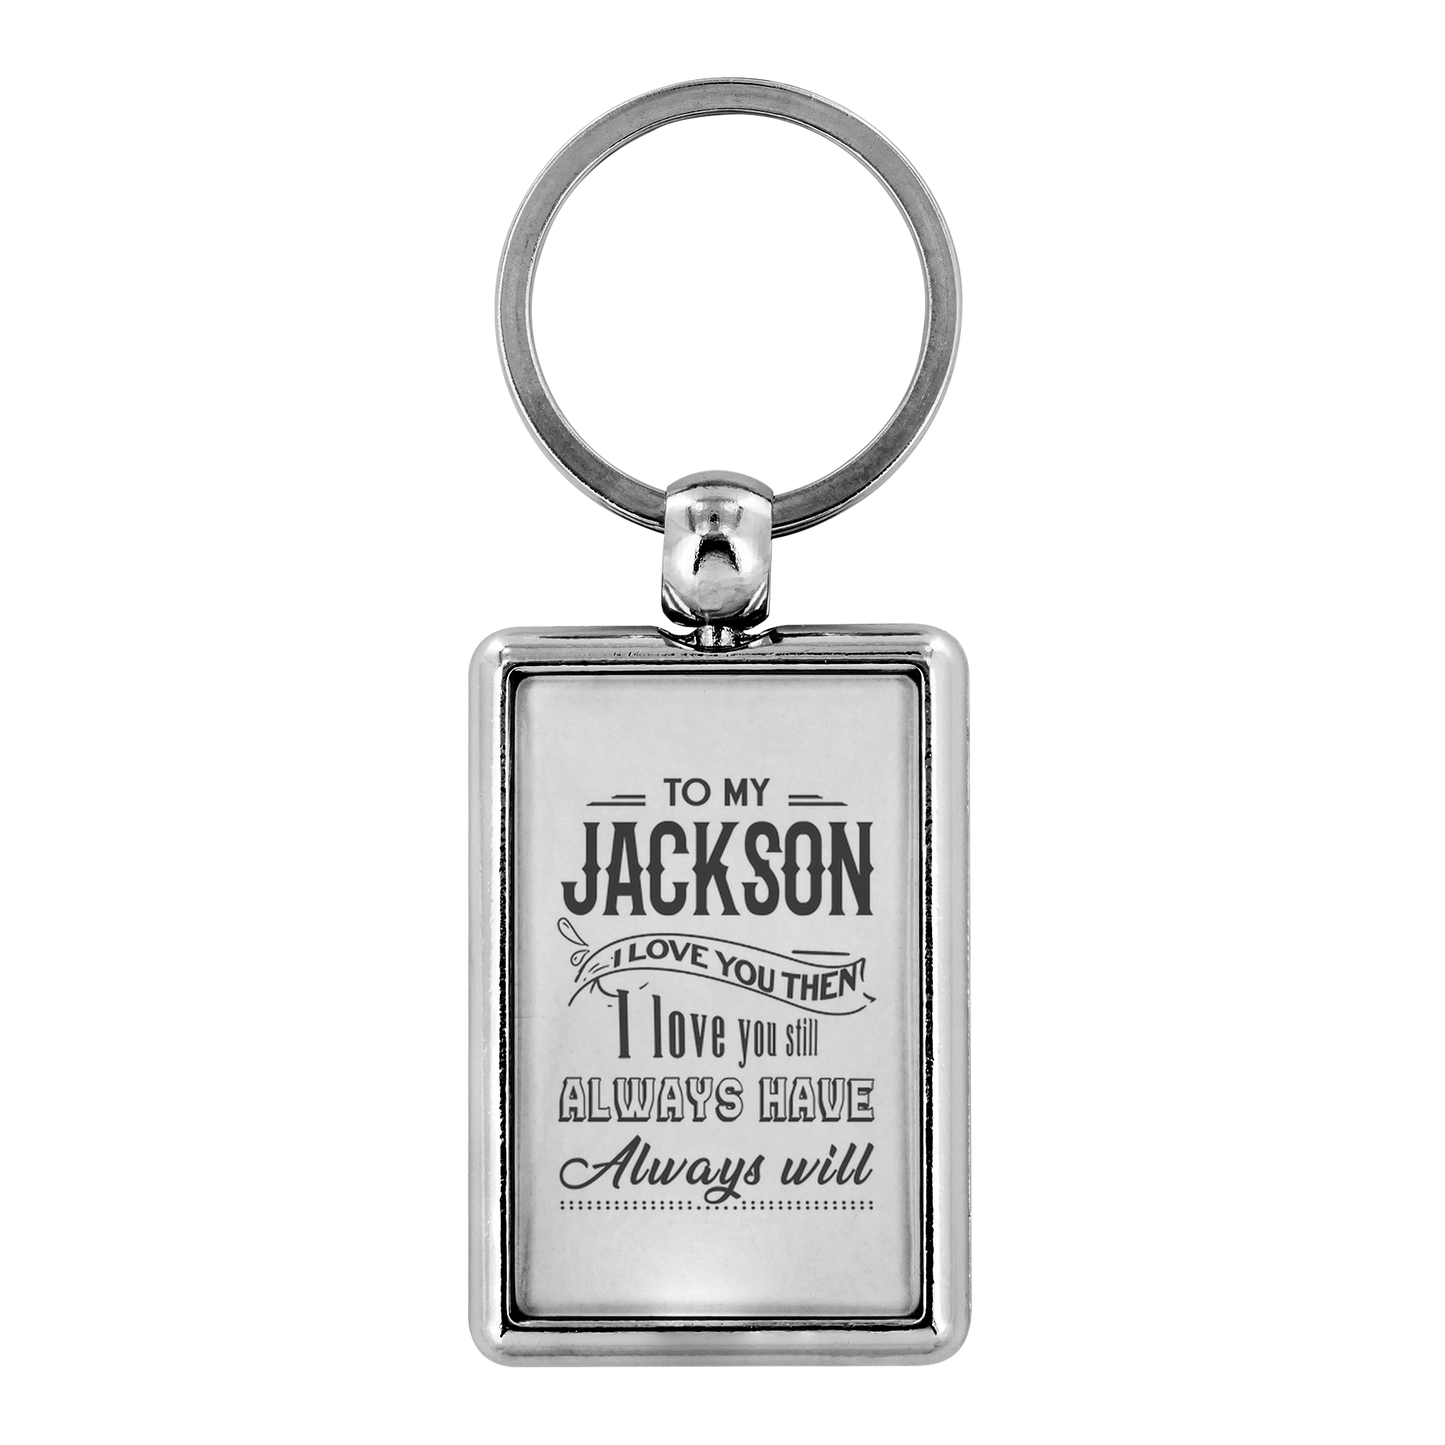 KC-21245235-sp-23385 - Keychain For Boyfriend With Name Jackson - To My Jackson I L